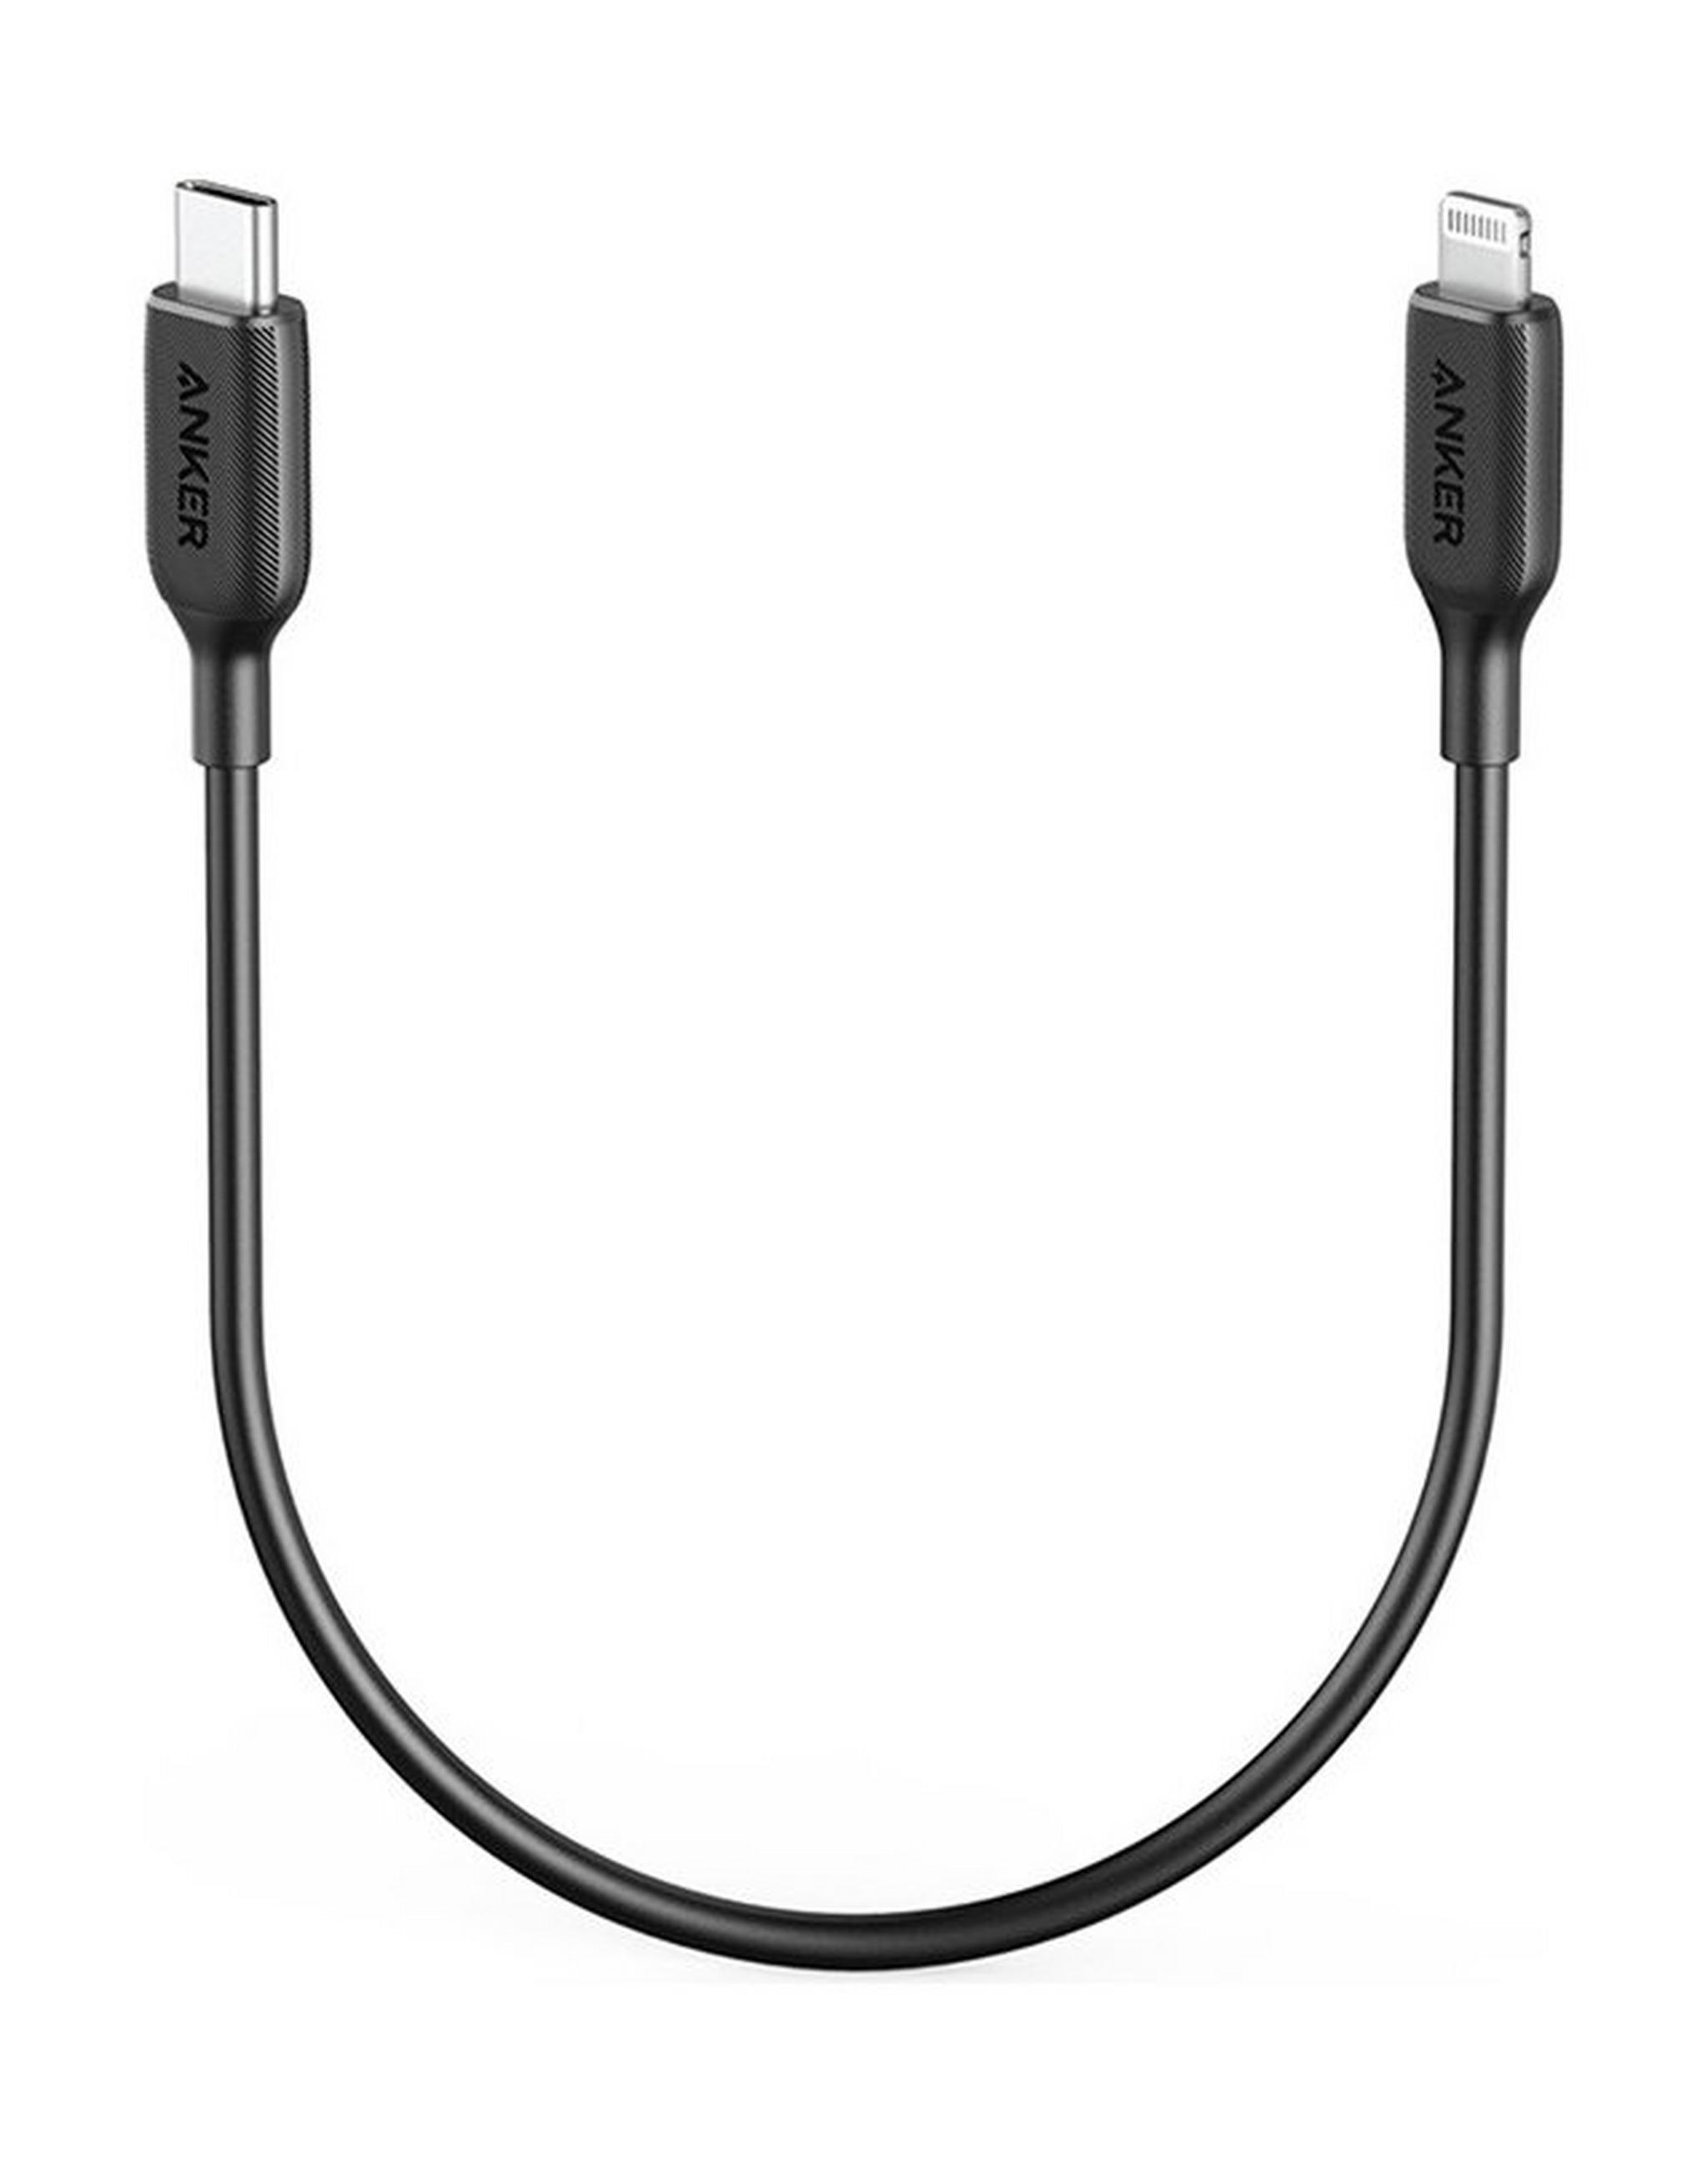 أنكر باور لاين III كابل USB-C إلى لايتيننج (1 قدم) - أسود